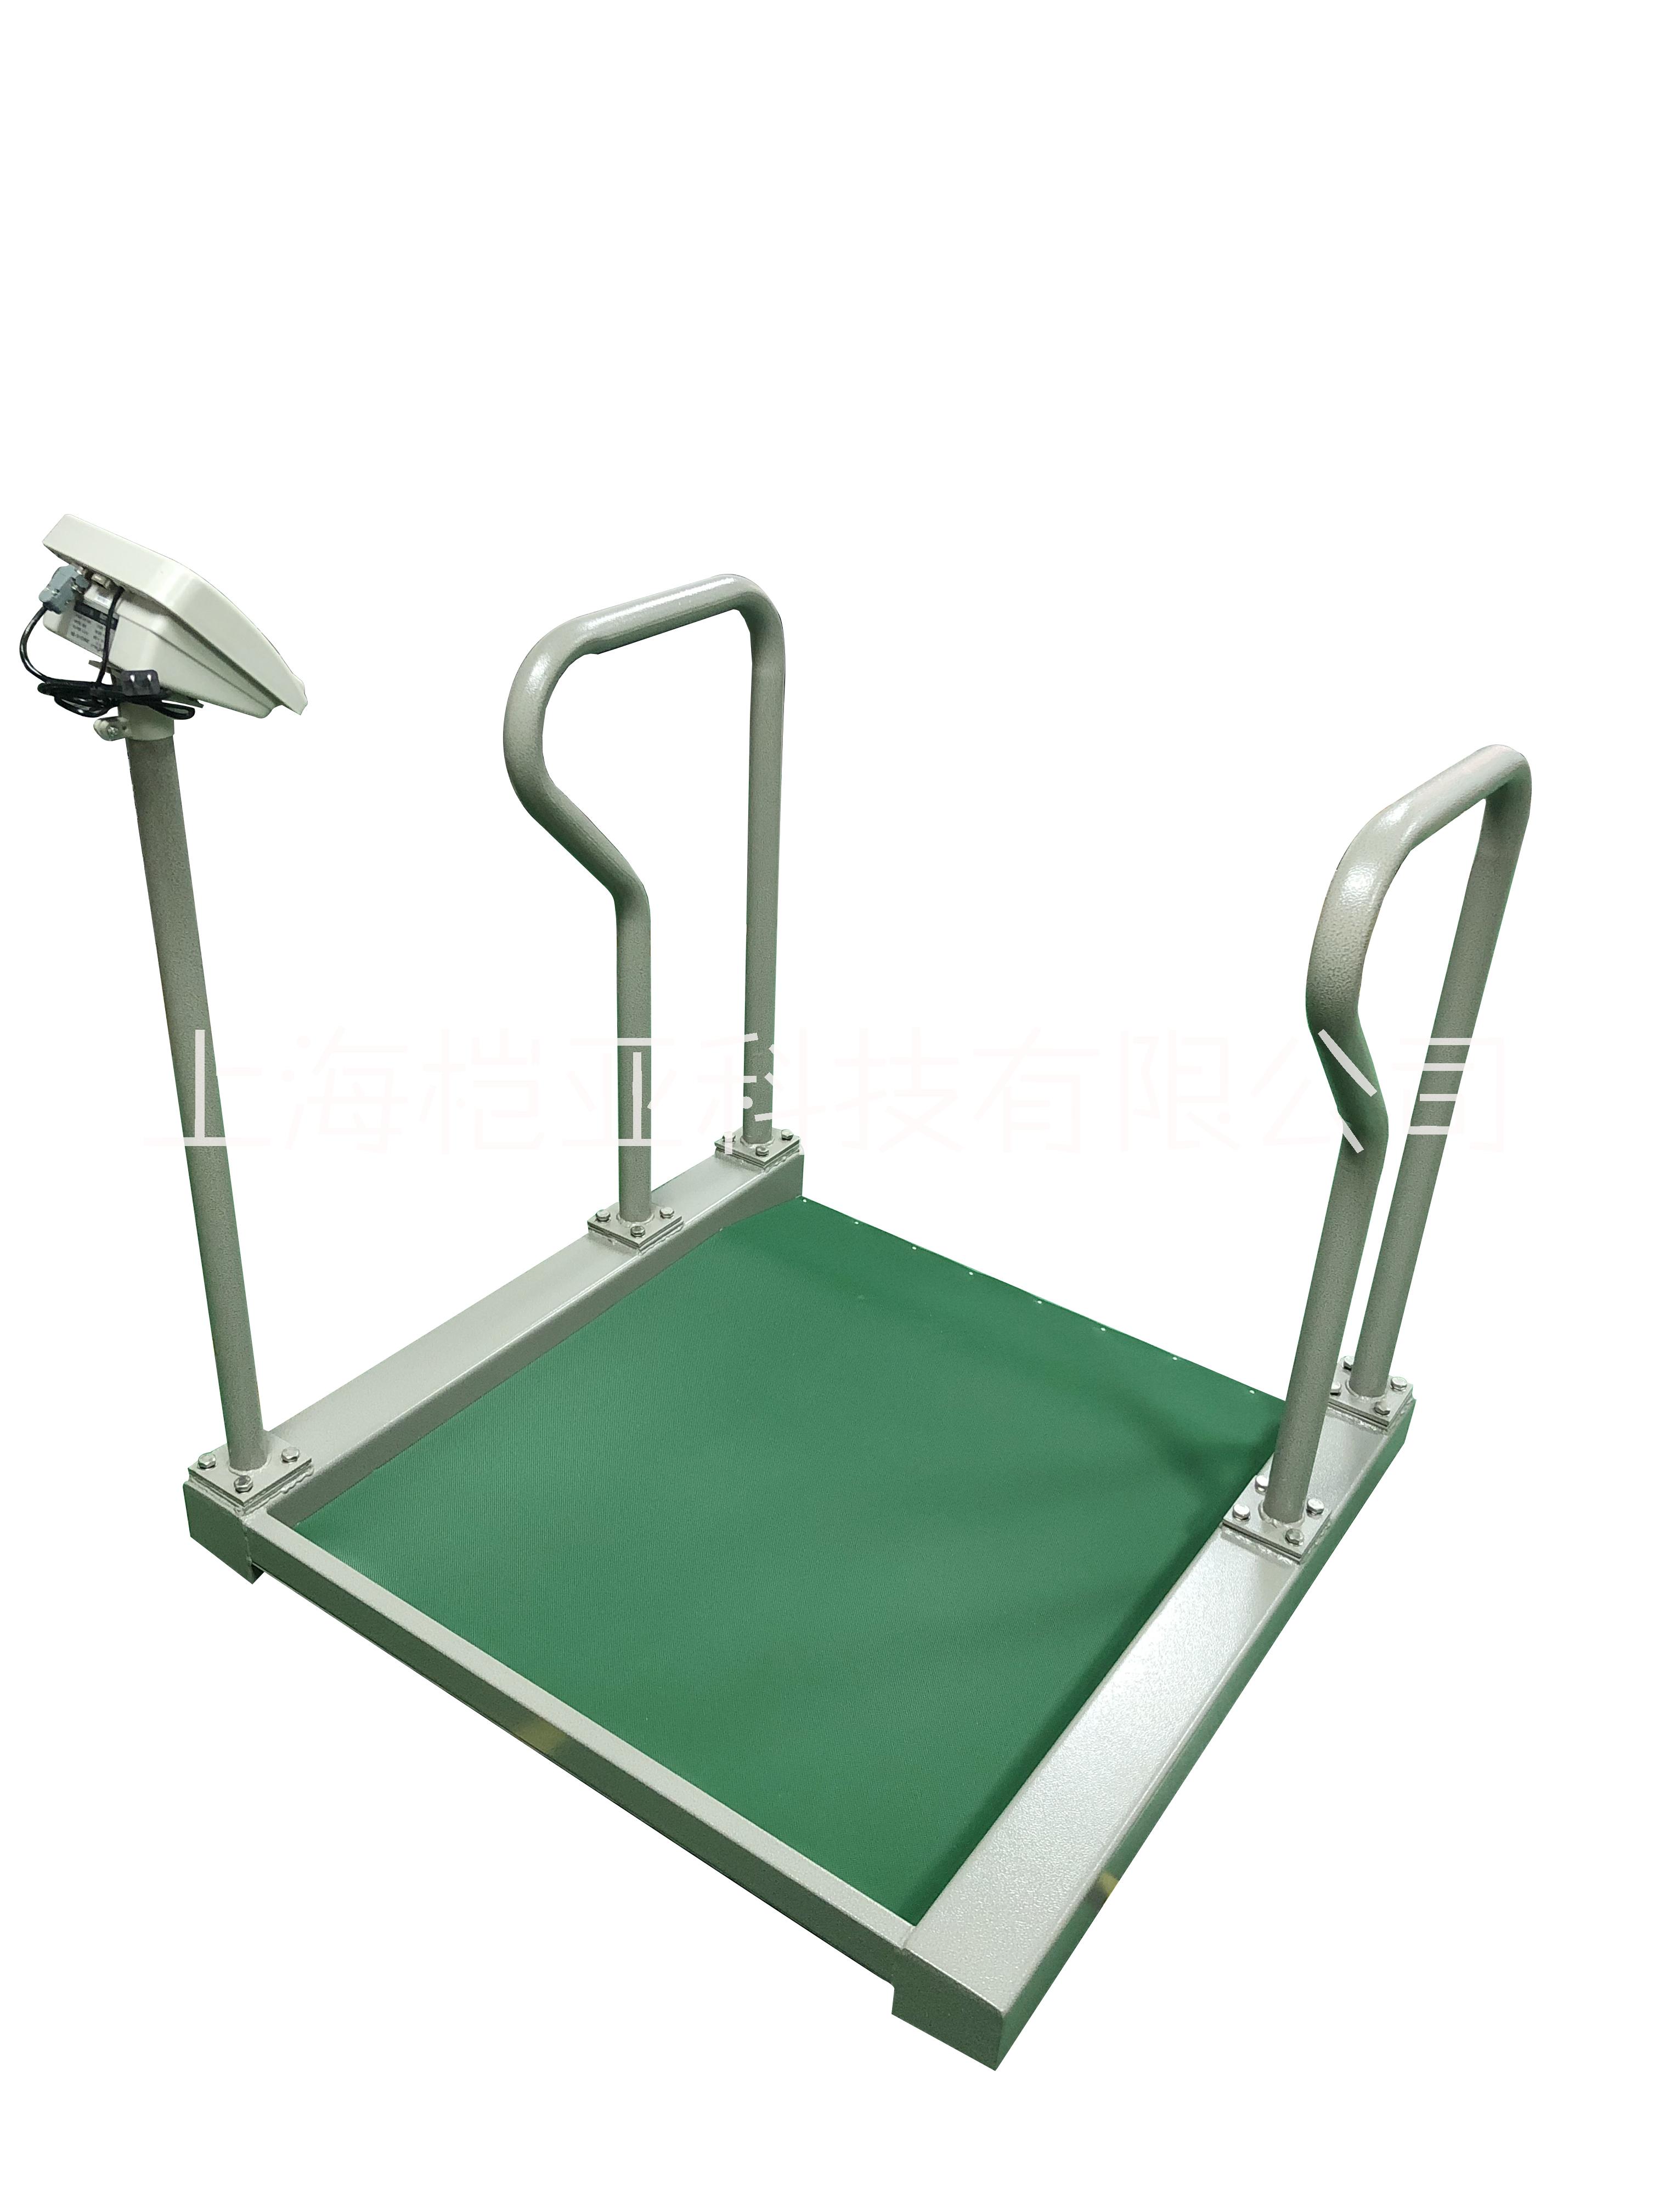 轮椅电子秤 医用透体体重秤 透析专用称重图片